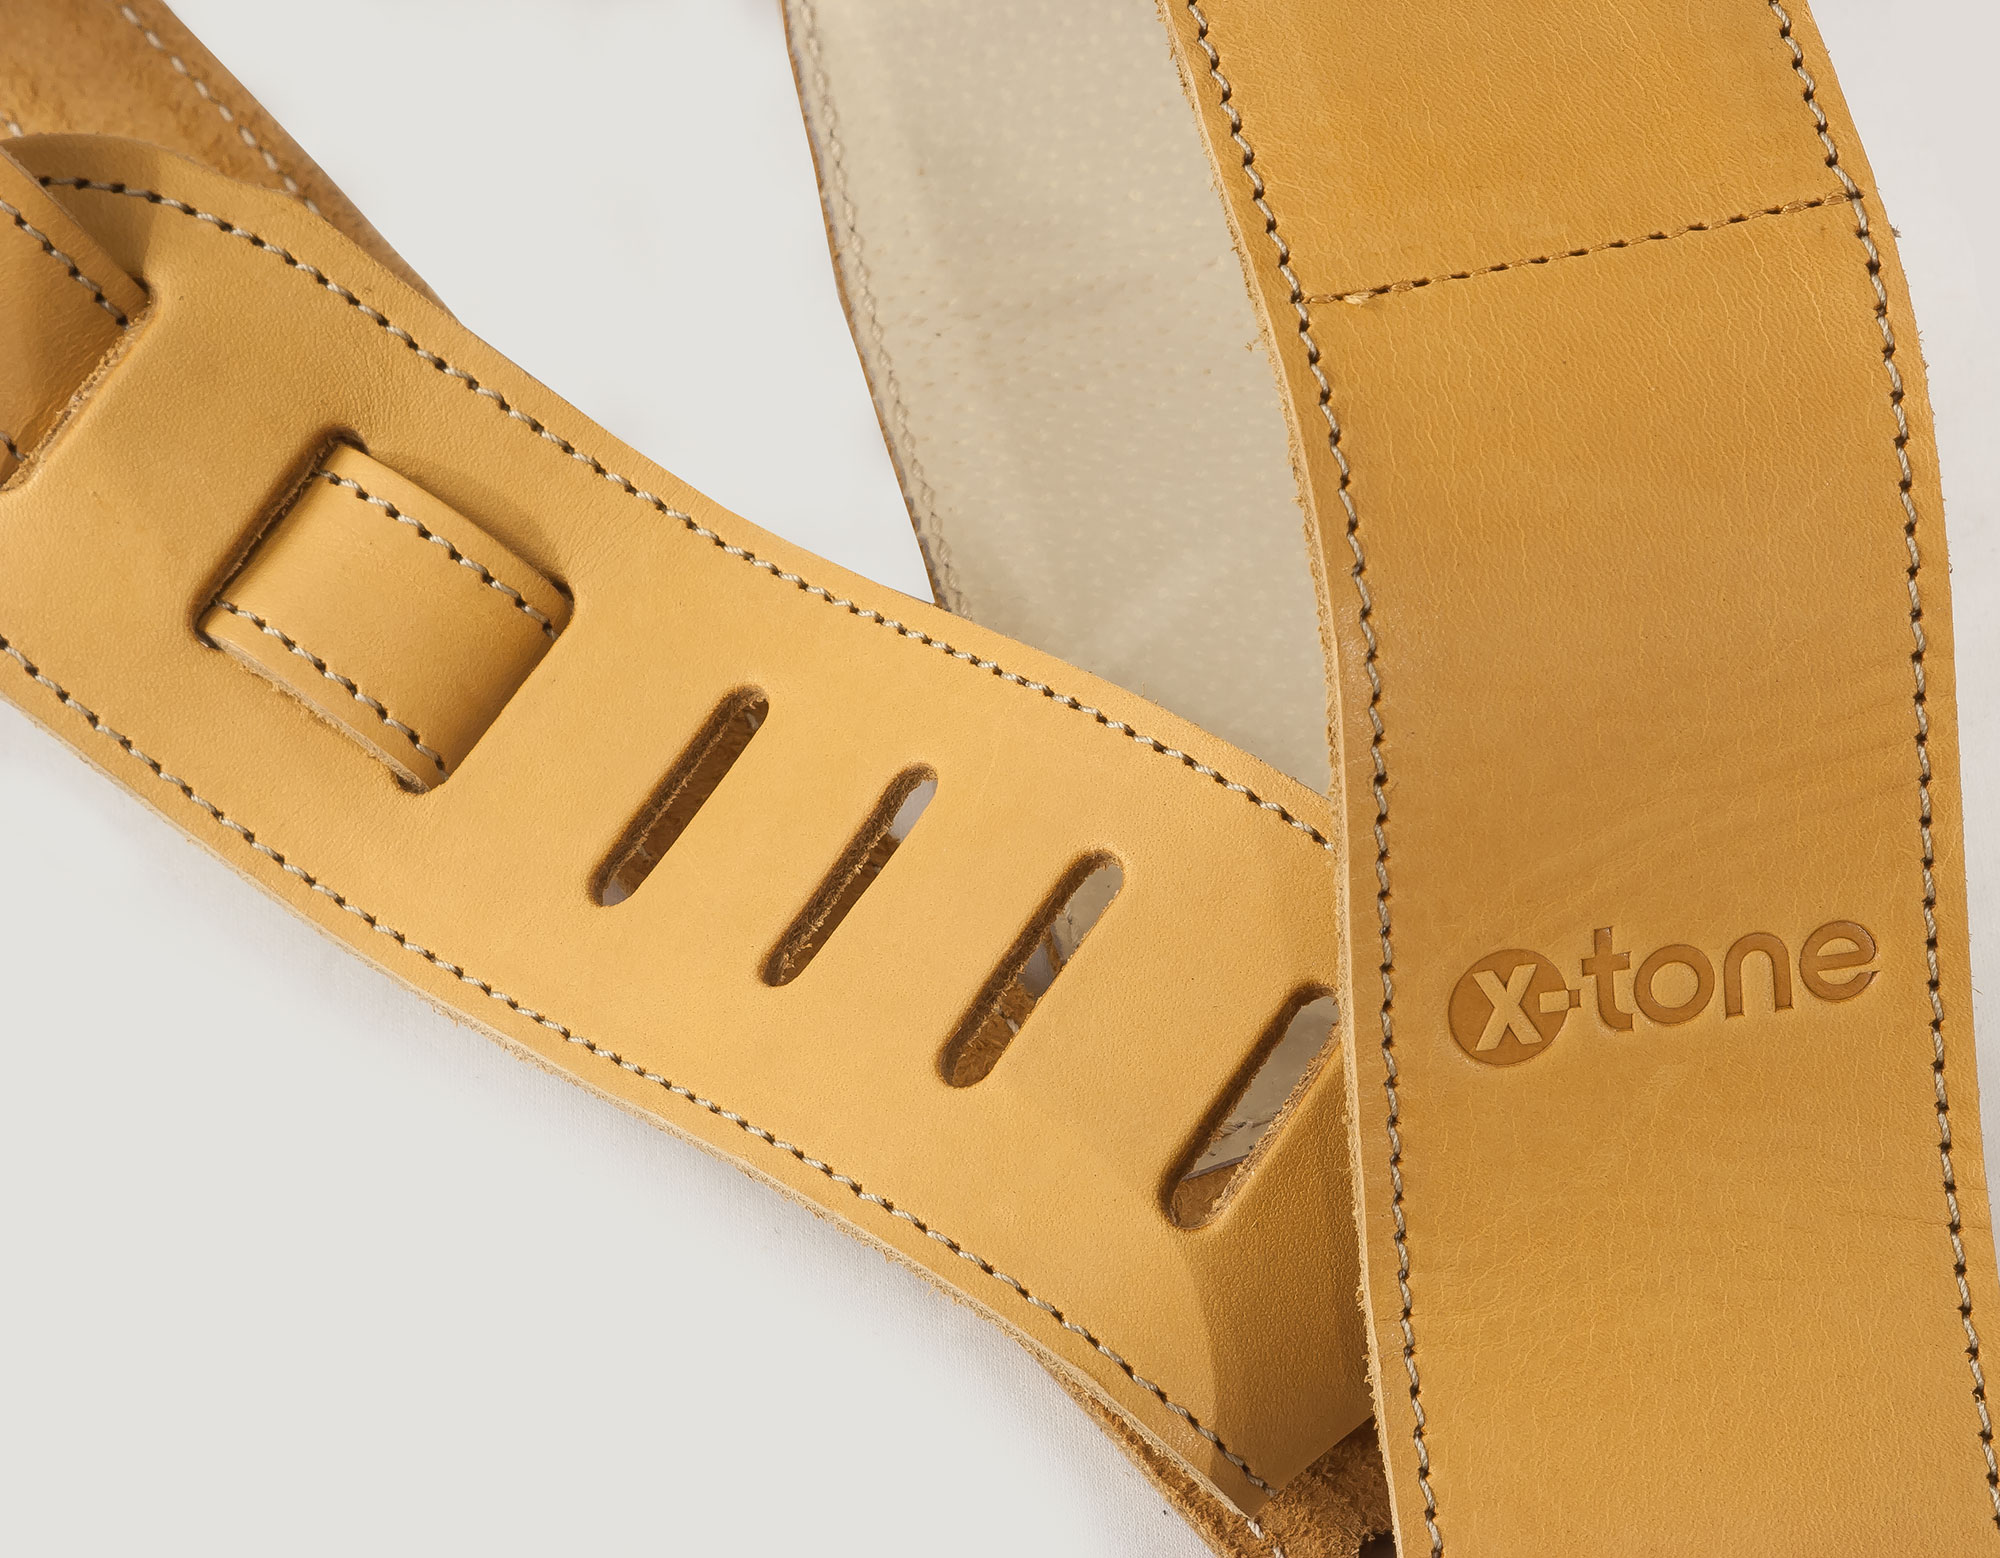 X-tone Xg 3154 Classic Plus Leather Guitar Strap Cuir RembourrÉe Brownstone Beige - Correa - Variation 1